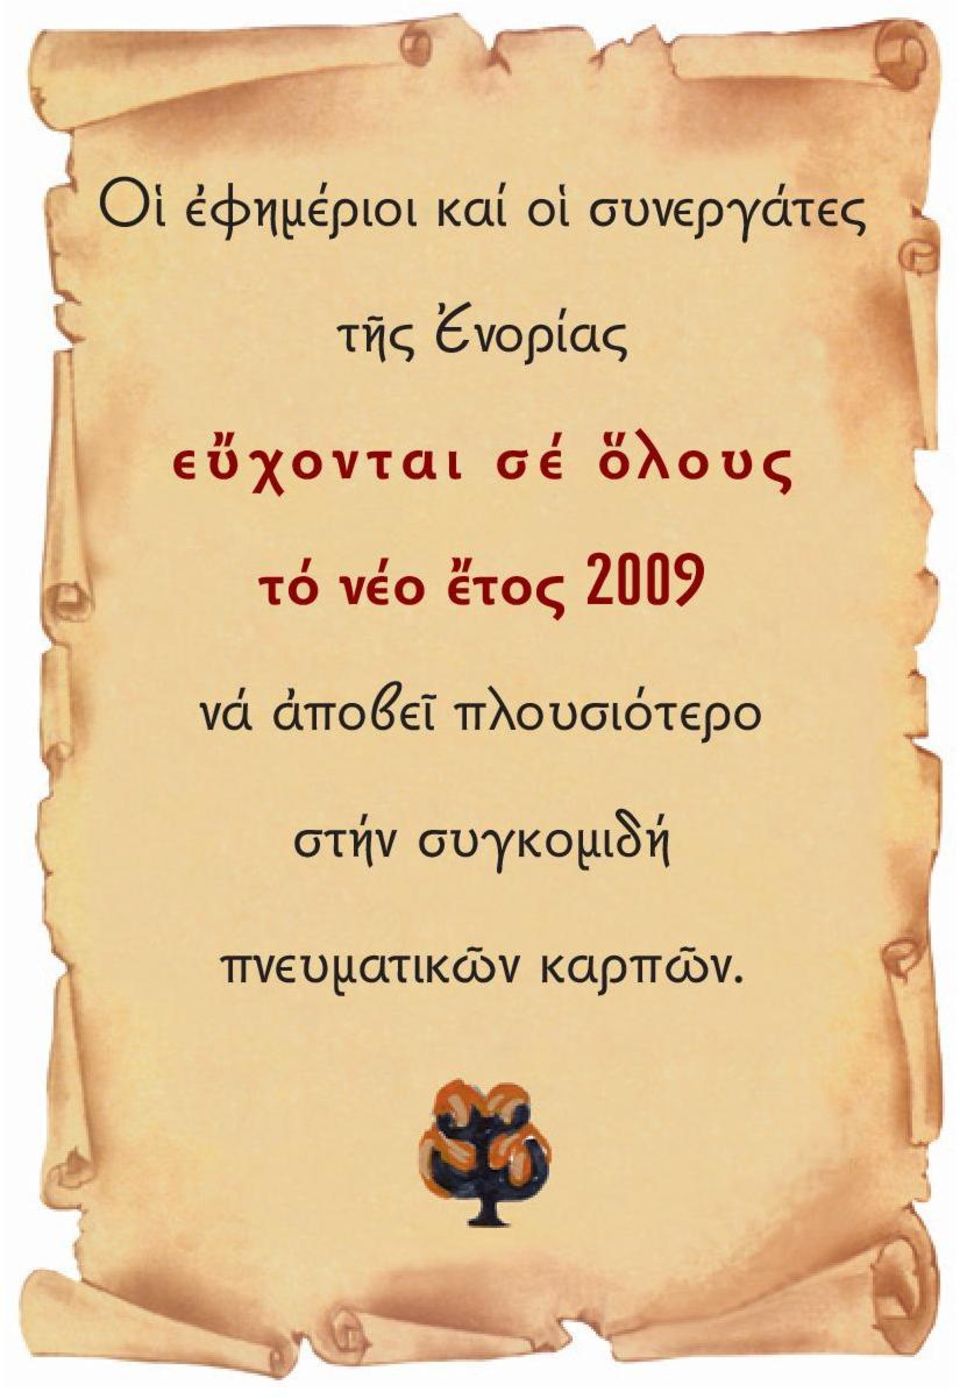 νέο ἔτος 2009 νά ἀποβεῖ